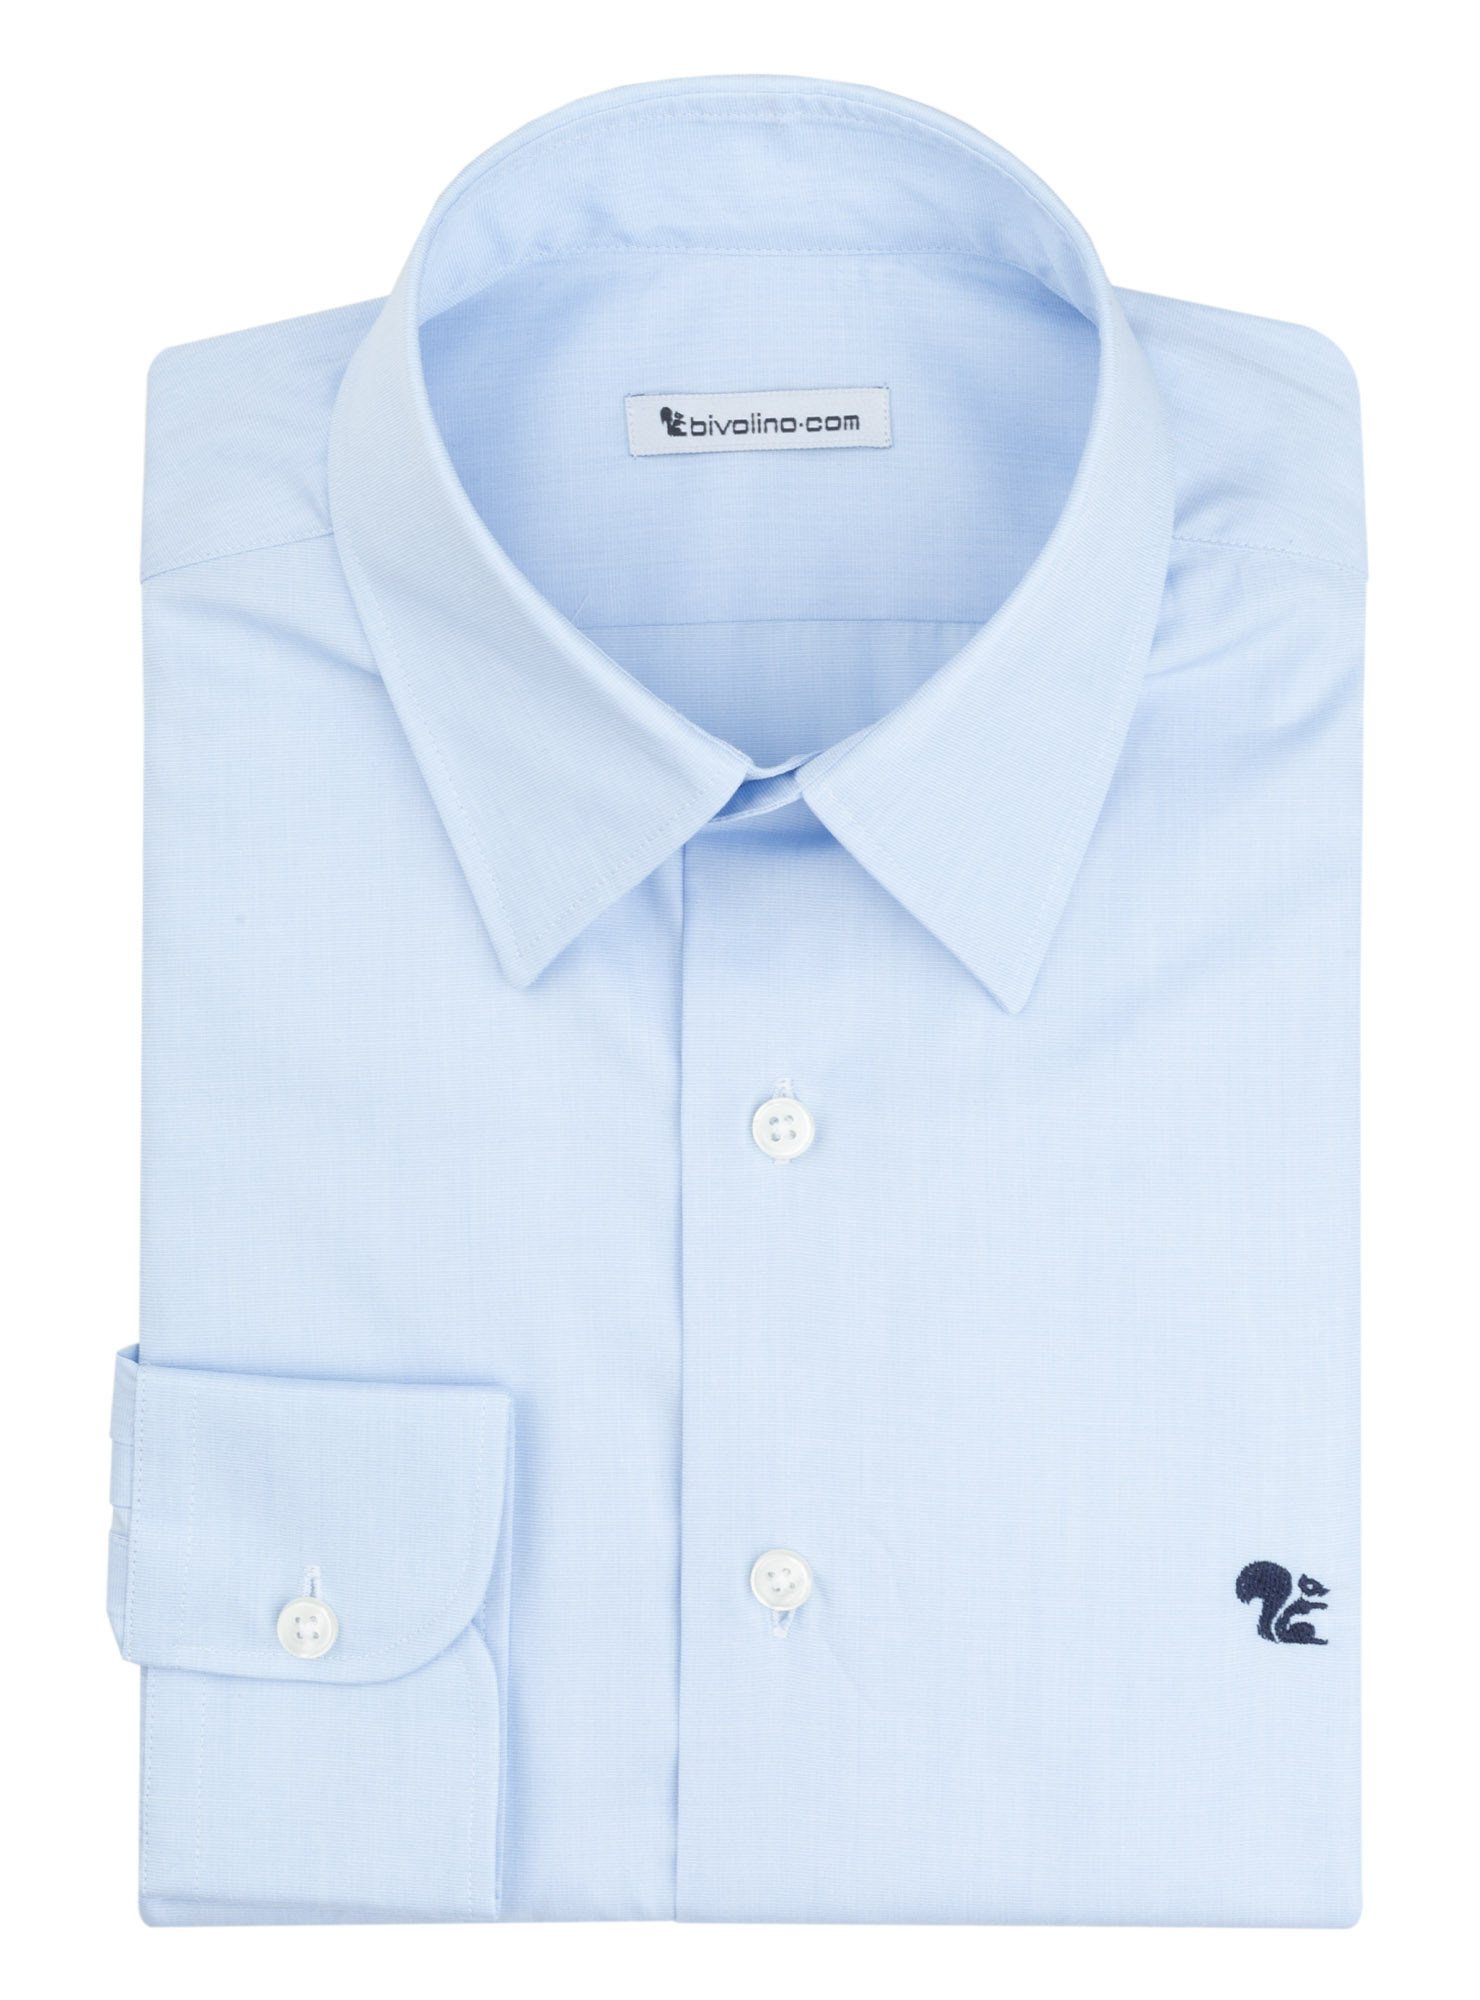 AOSTA - Camisa lisa azul cielo de punta a punta para hombre - PARTY 2